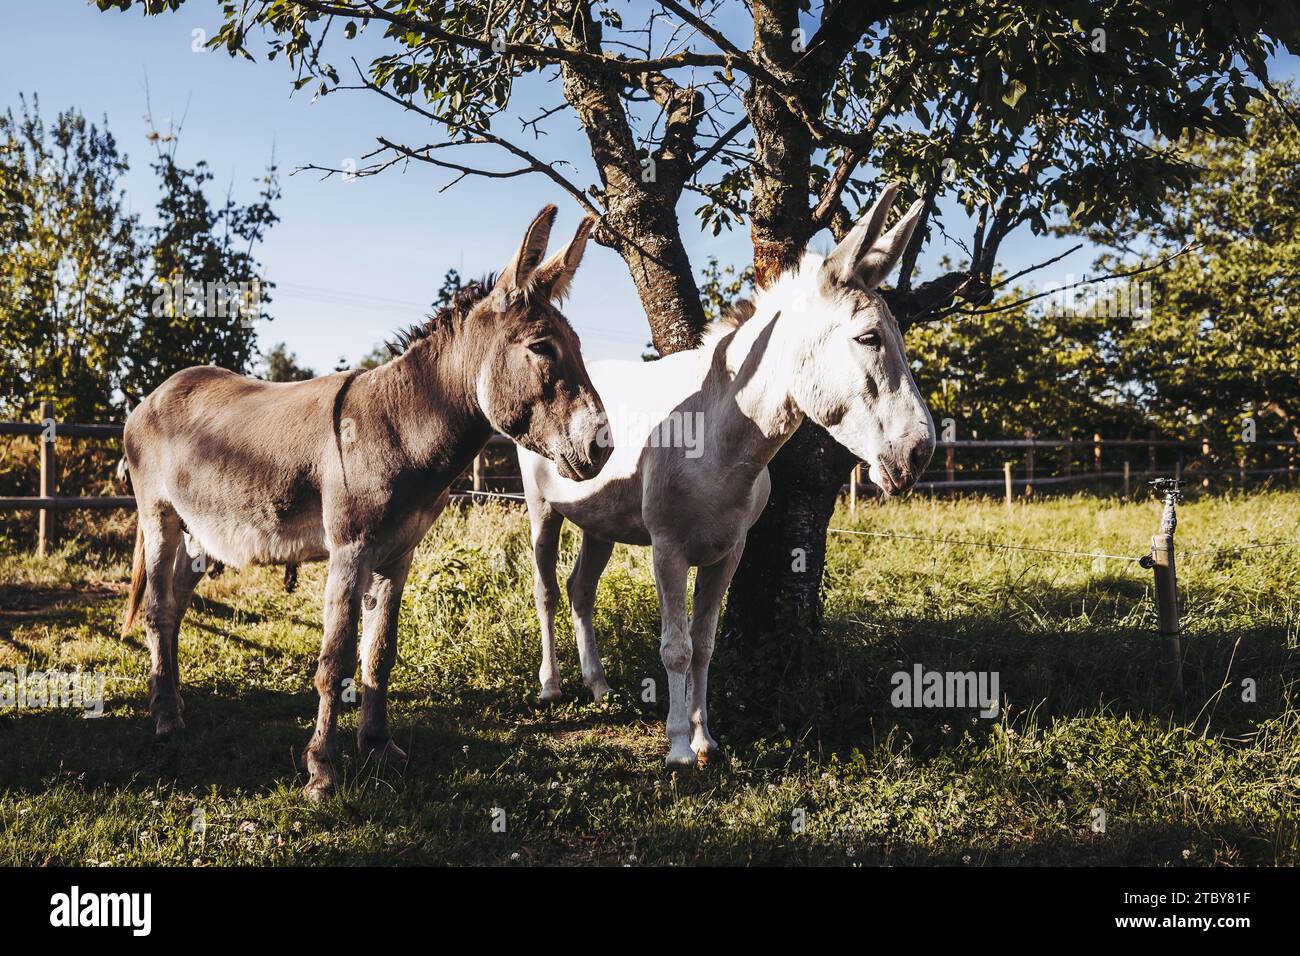 Two male donkeys in a field Stock Photo